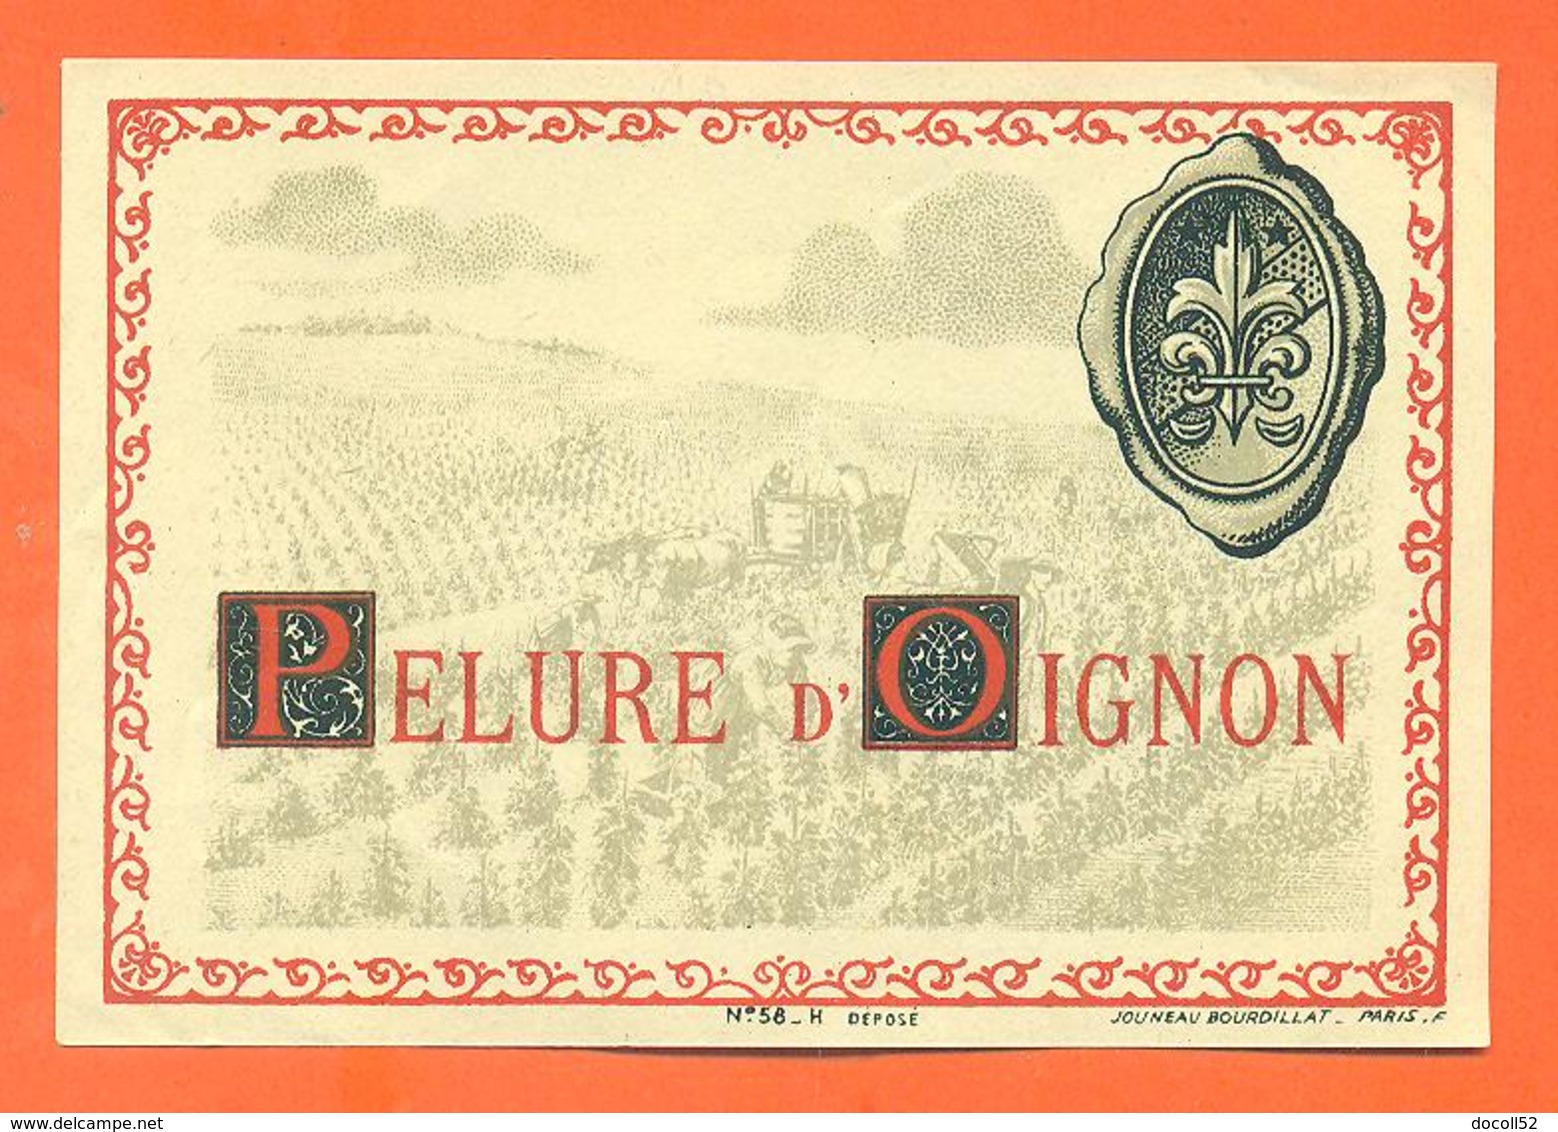 étiquette Ancienne Vin De Pelure D'oignon - 75 Cl - Vino Rosato